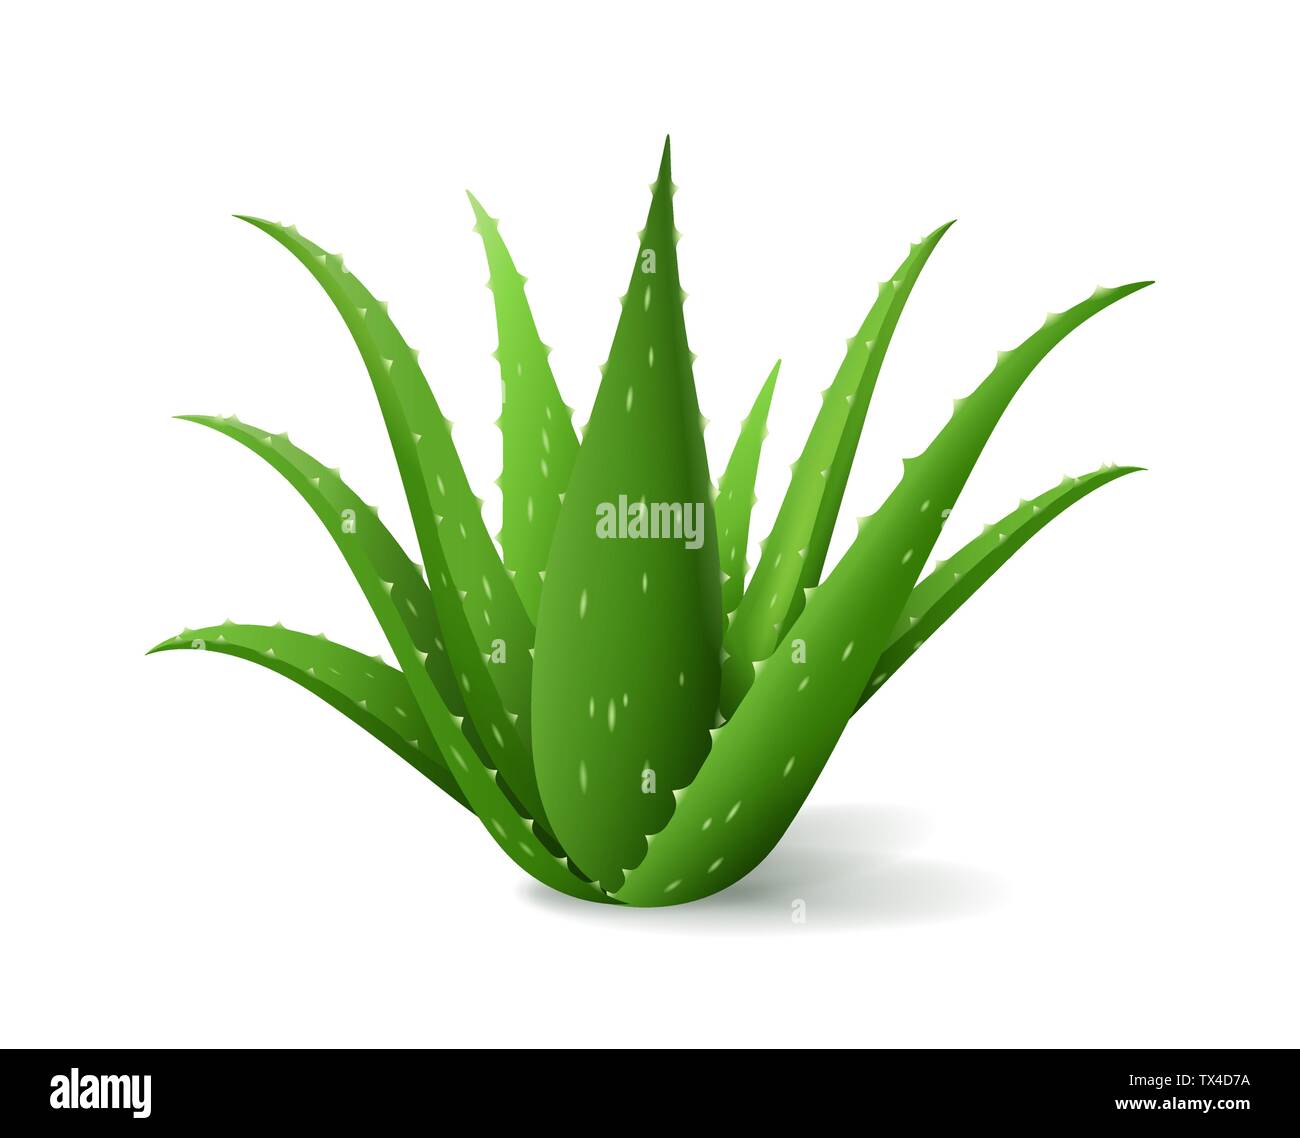 Aloe Vera Bush, realistische grüne Pflanze, grün Aloe Blätter und Stängel auf weißem Hintergrund, Vector Illustration Stock Vektor